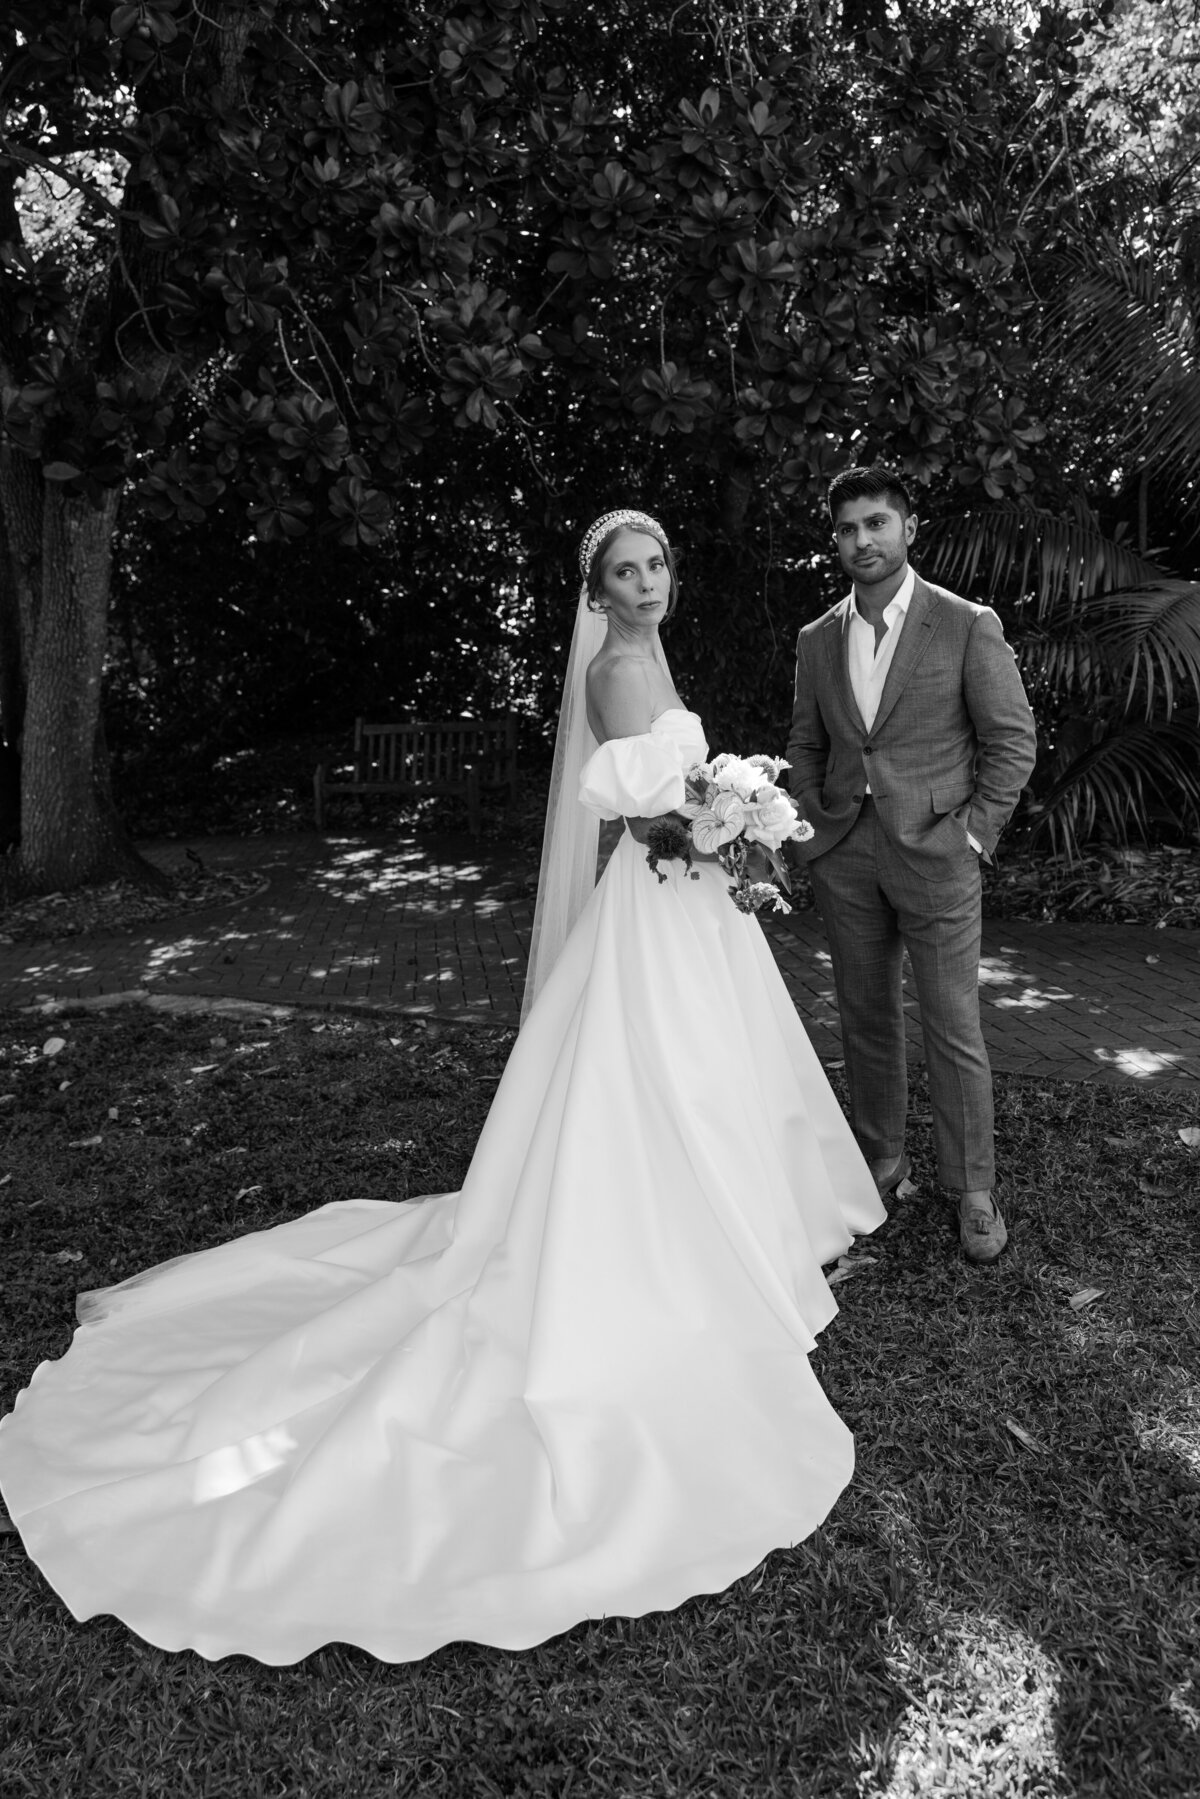 fairchild-botanical-garden-anti-bride-wedding-miami-florida-37